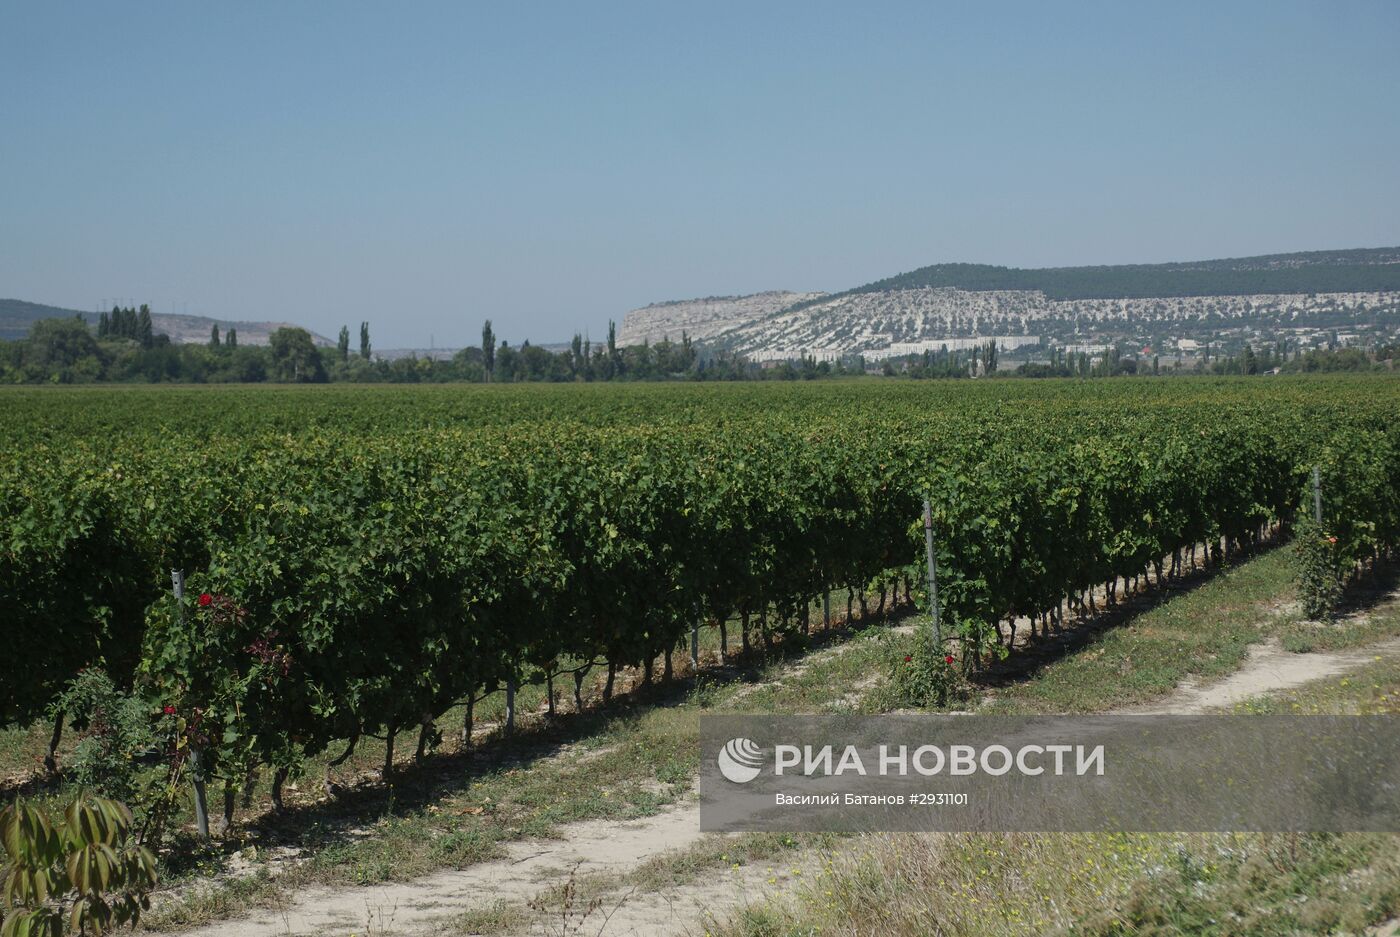 Винодельческое хозяйство "Шато Люсьен" в Крыму